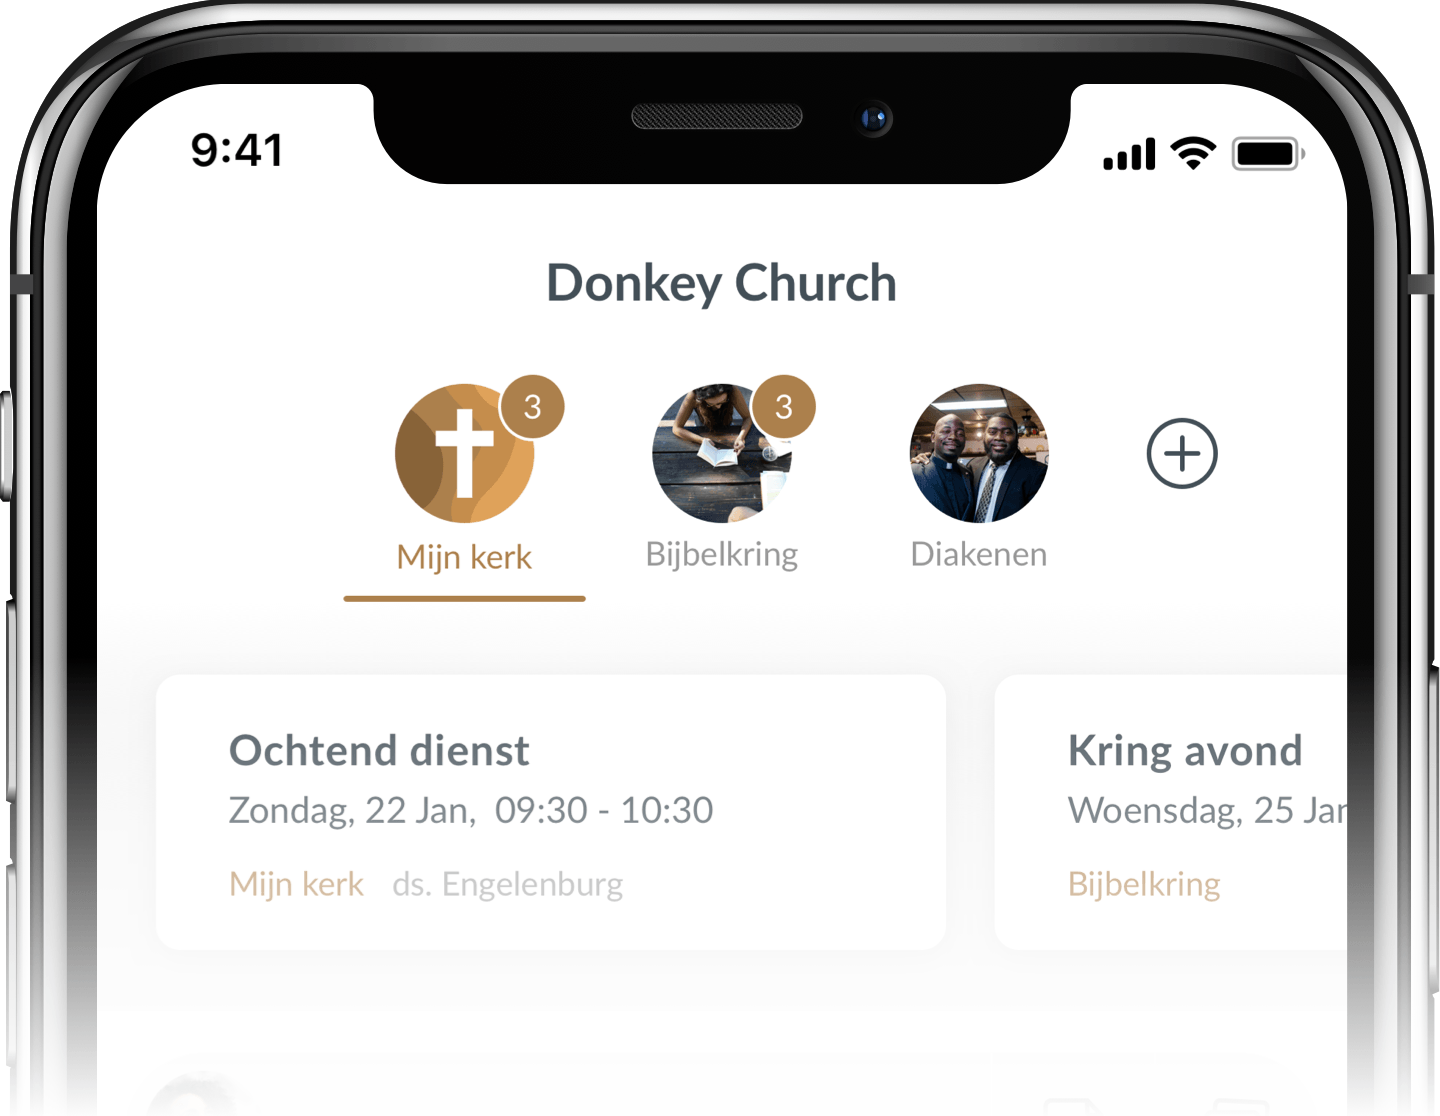 De groepenstructuur aan de bovenkant van de Donkey Mobile kerk app